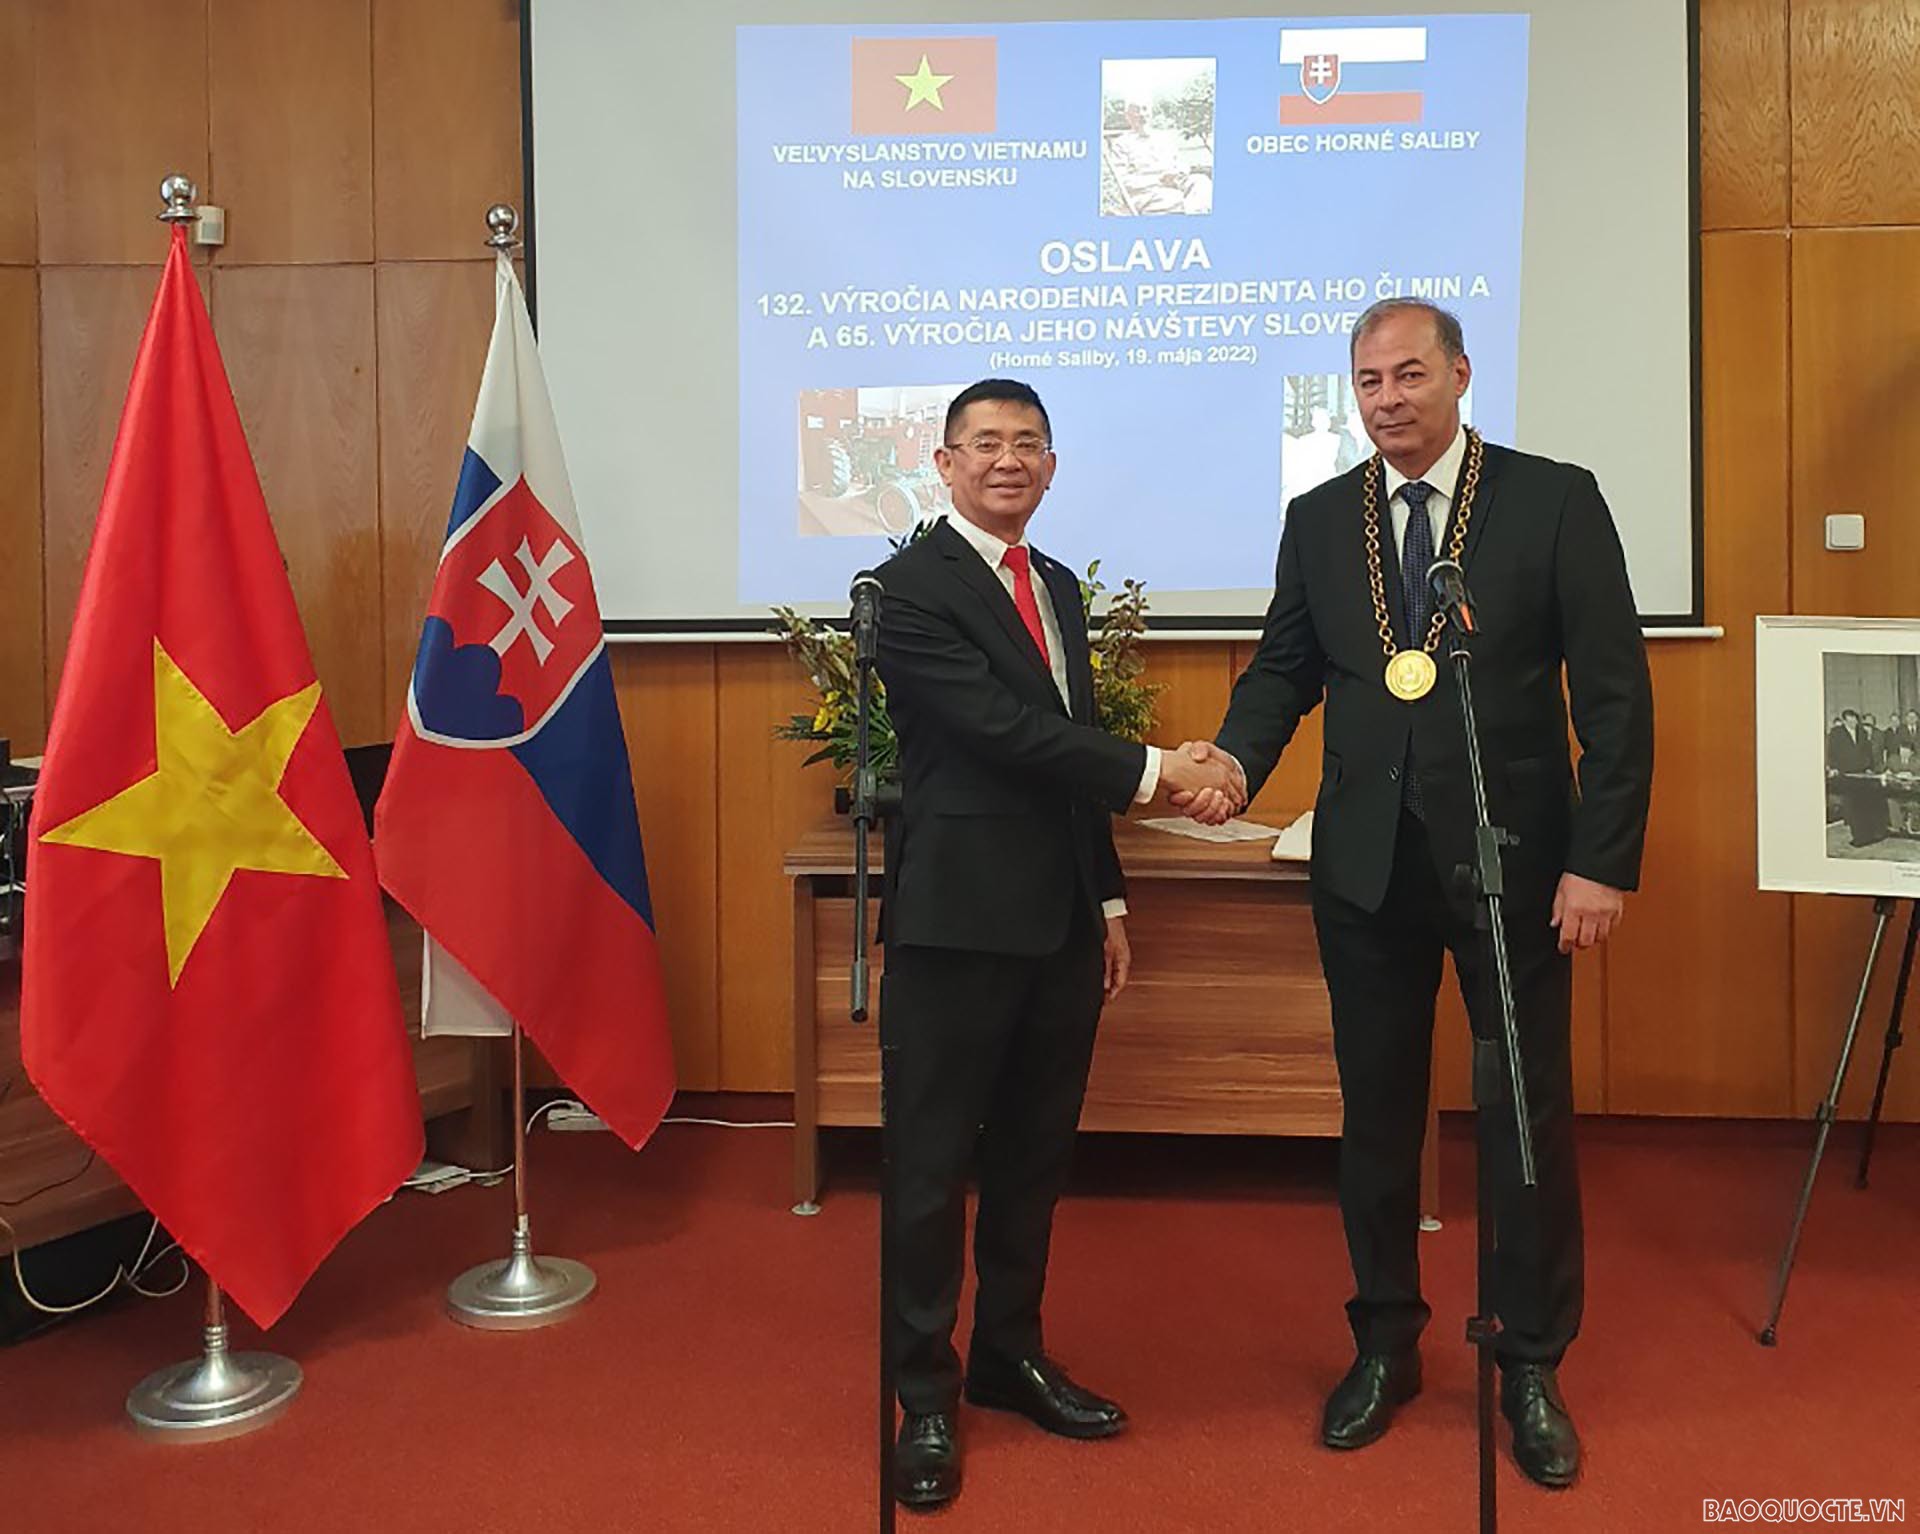 Đại sứ Nguyễn Tuấn và ông Pavol Dobosy, Thị trưởng Horné Saliby.